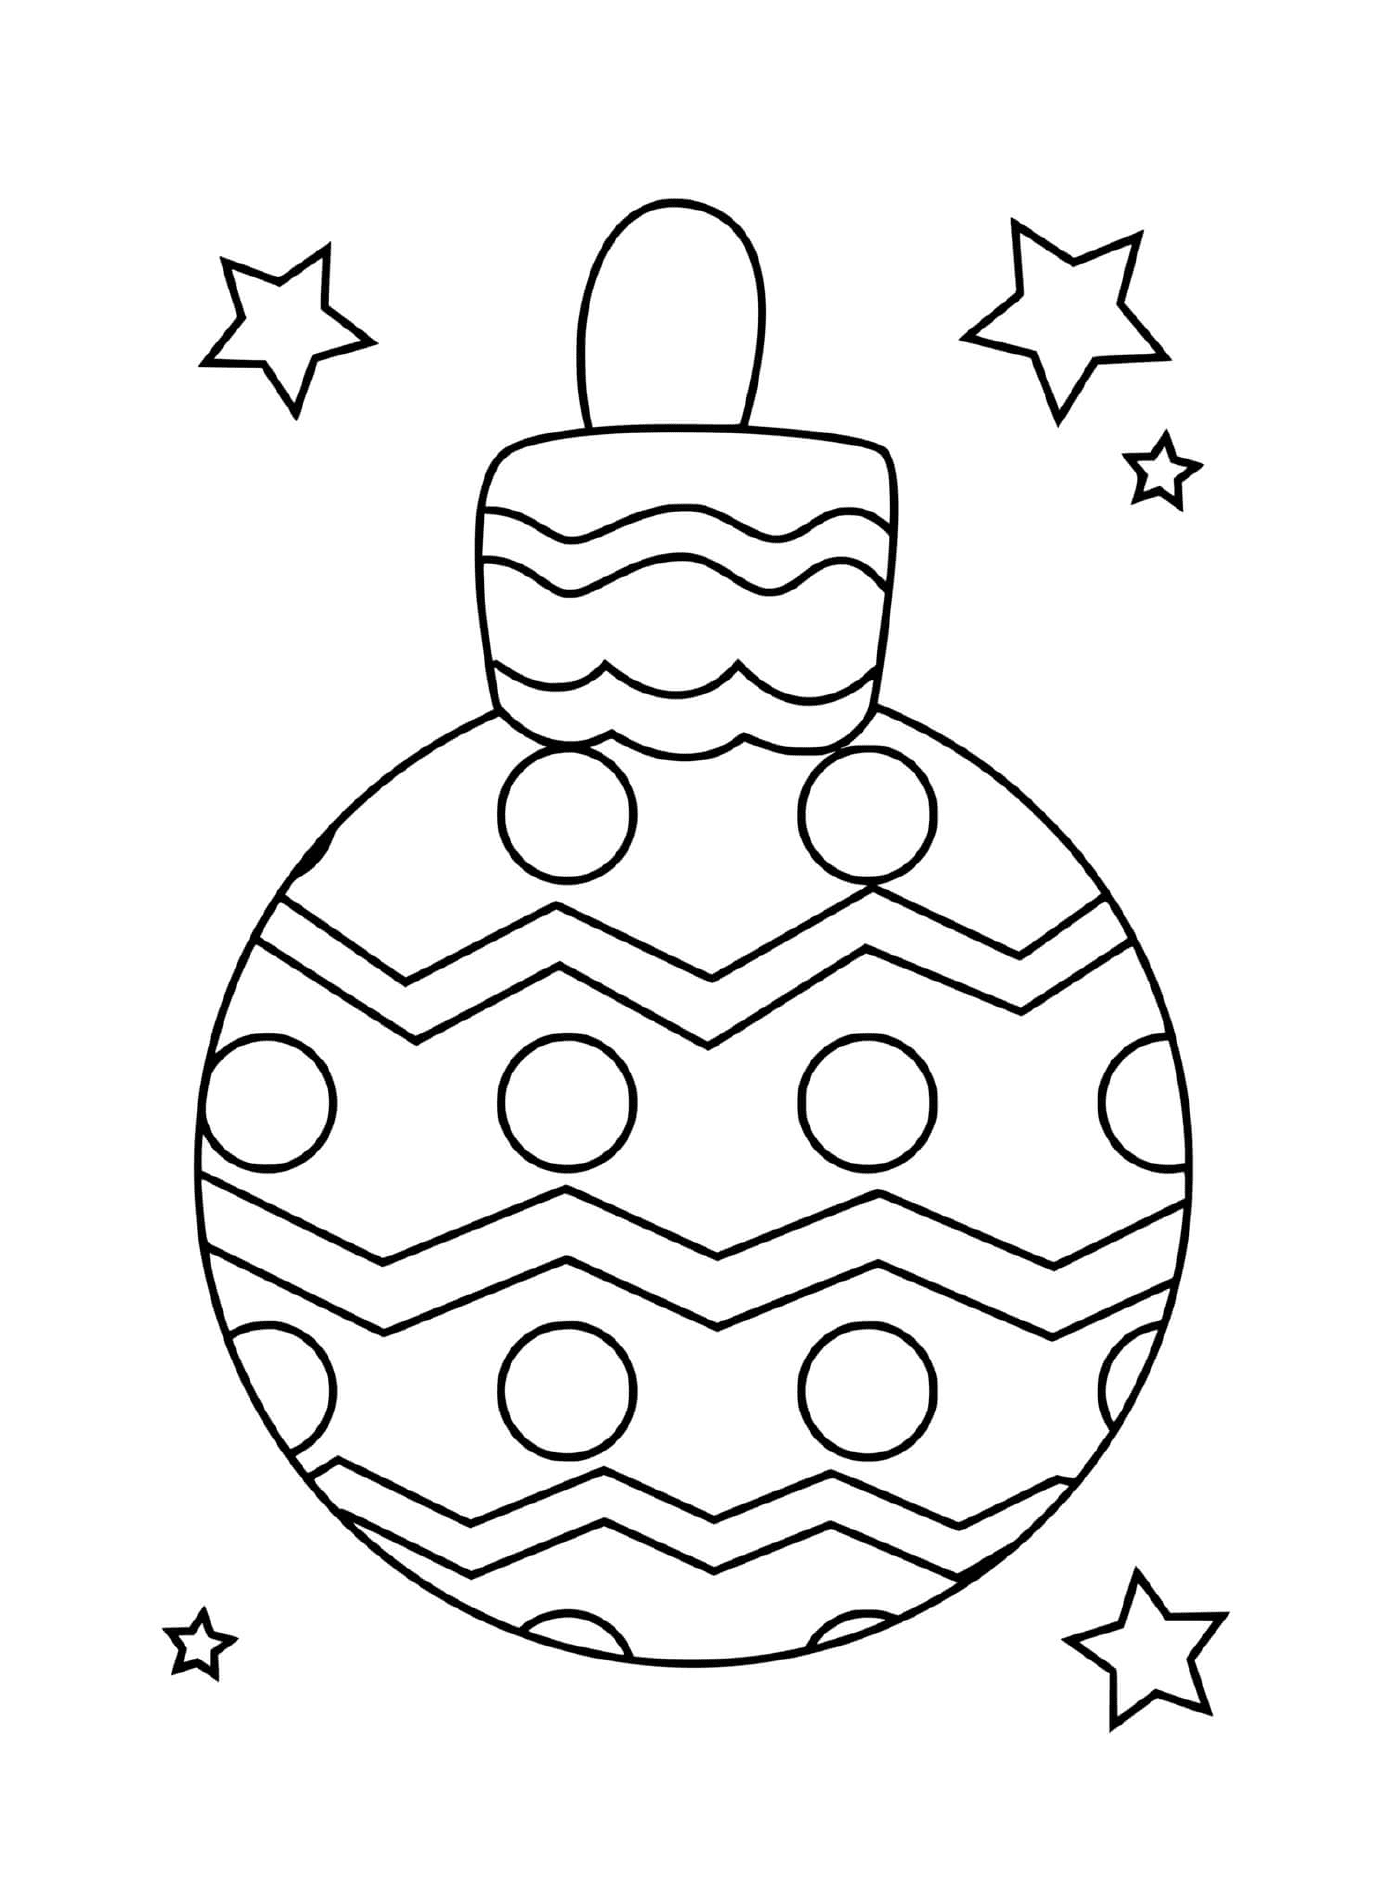  كرة عيد ميلاد مبسطة مع دوائر و zigzazags 